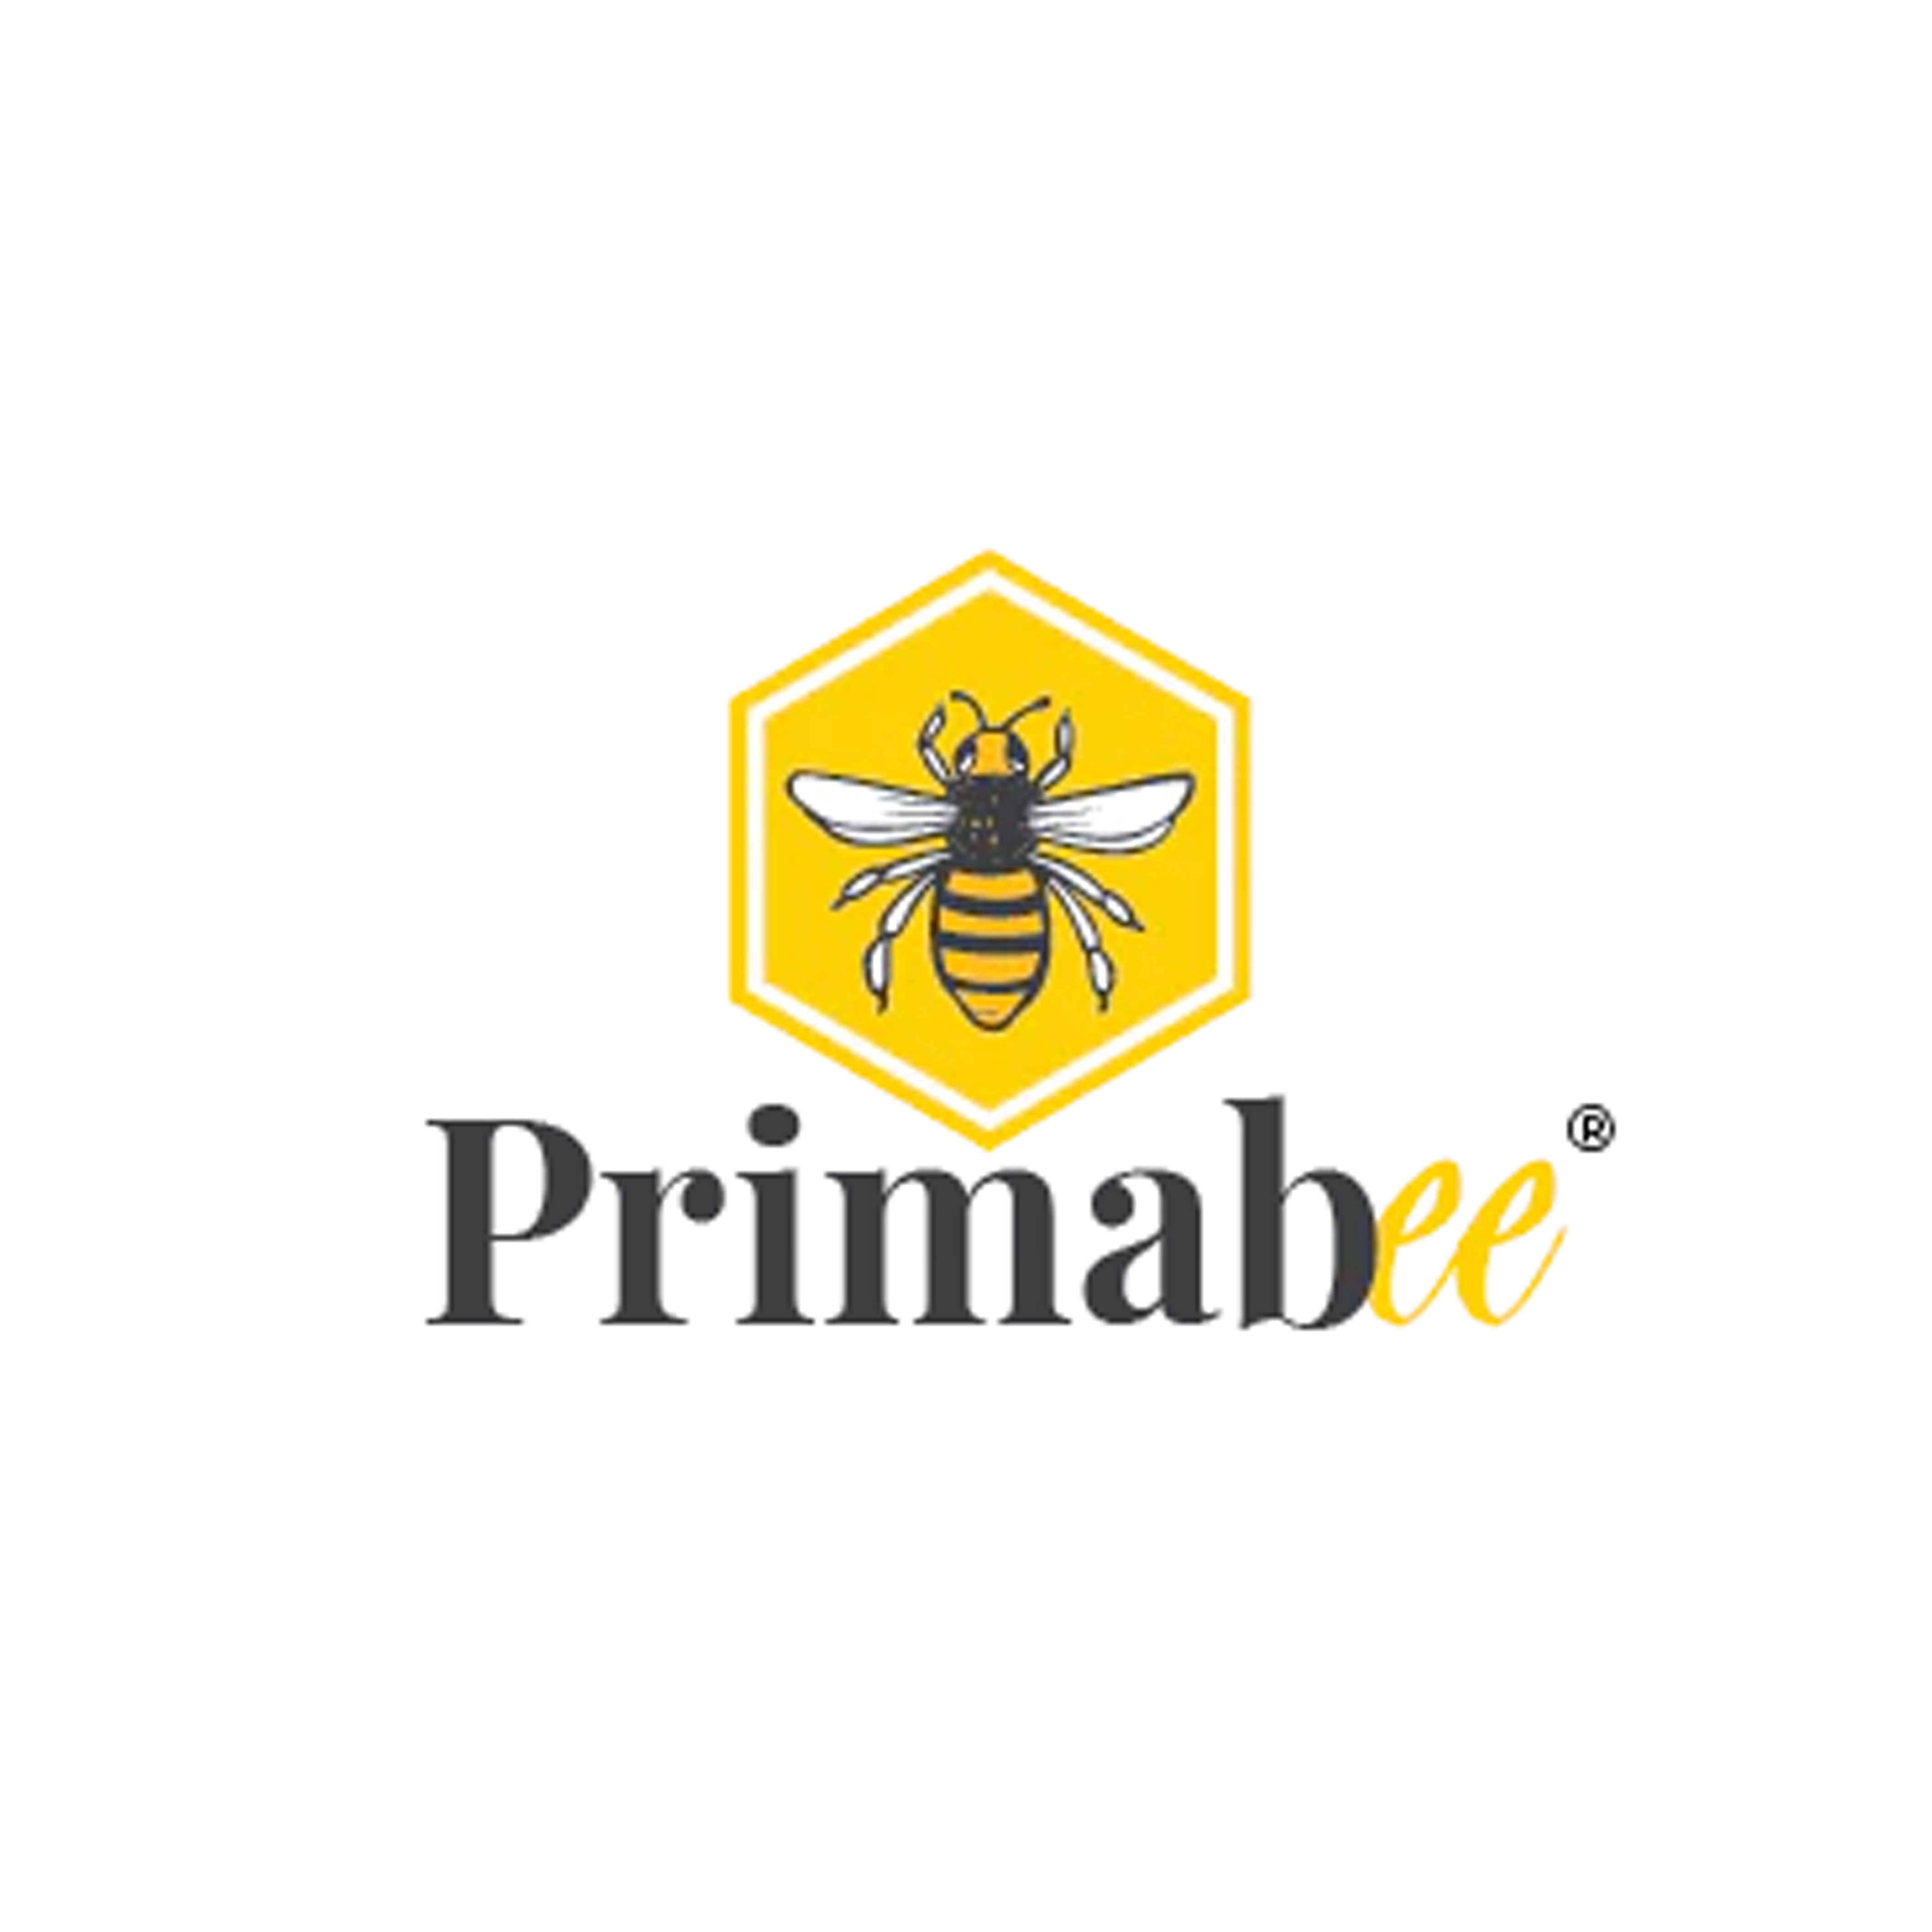 Primabee logo